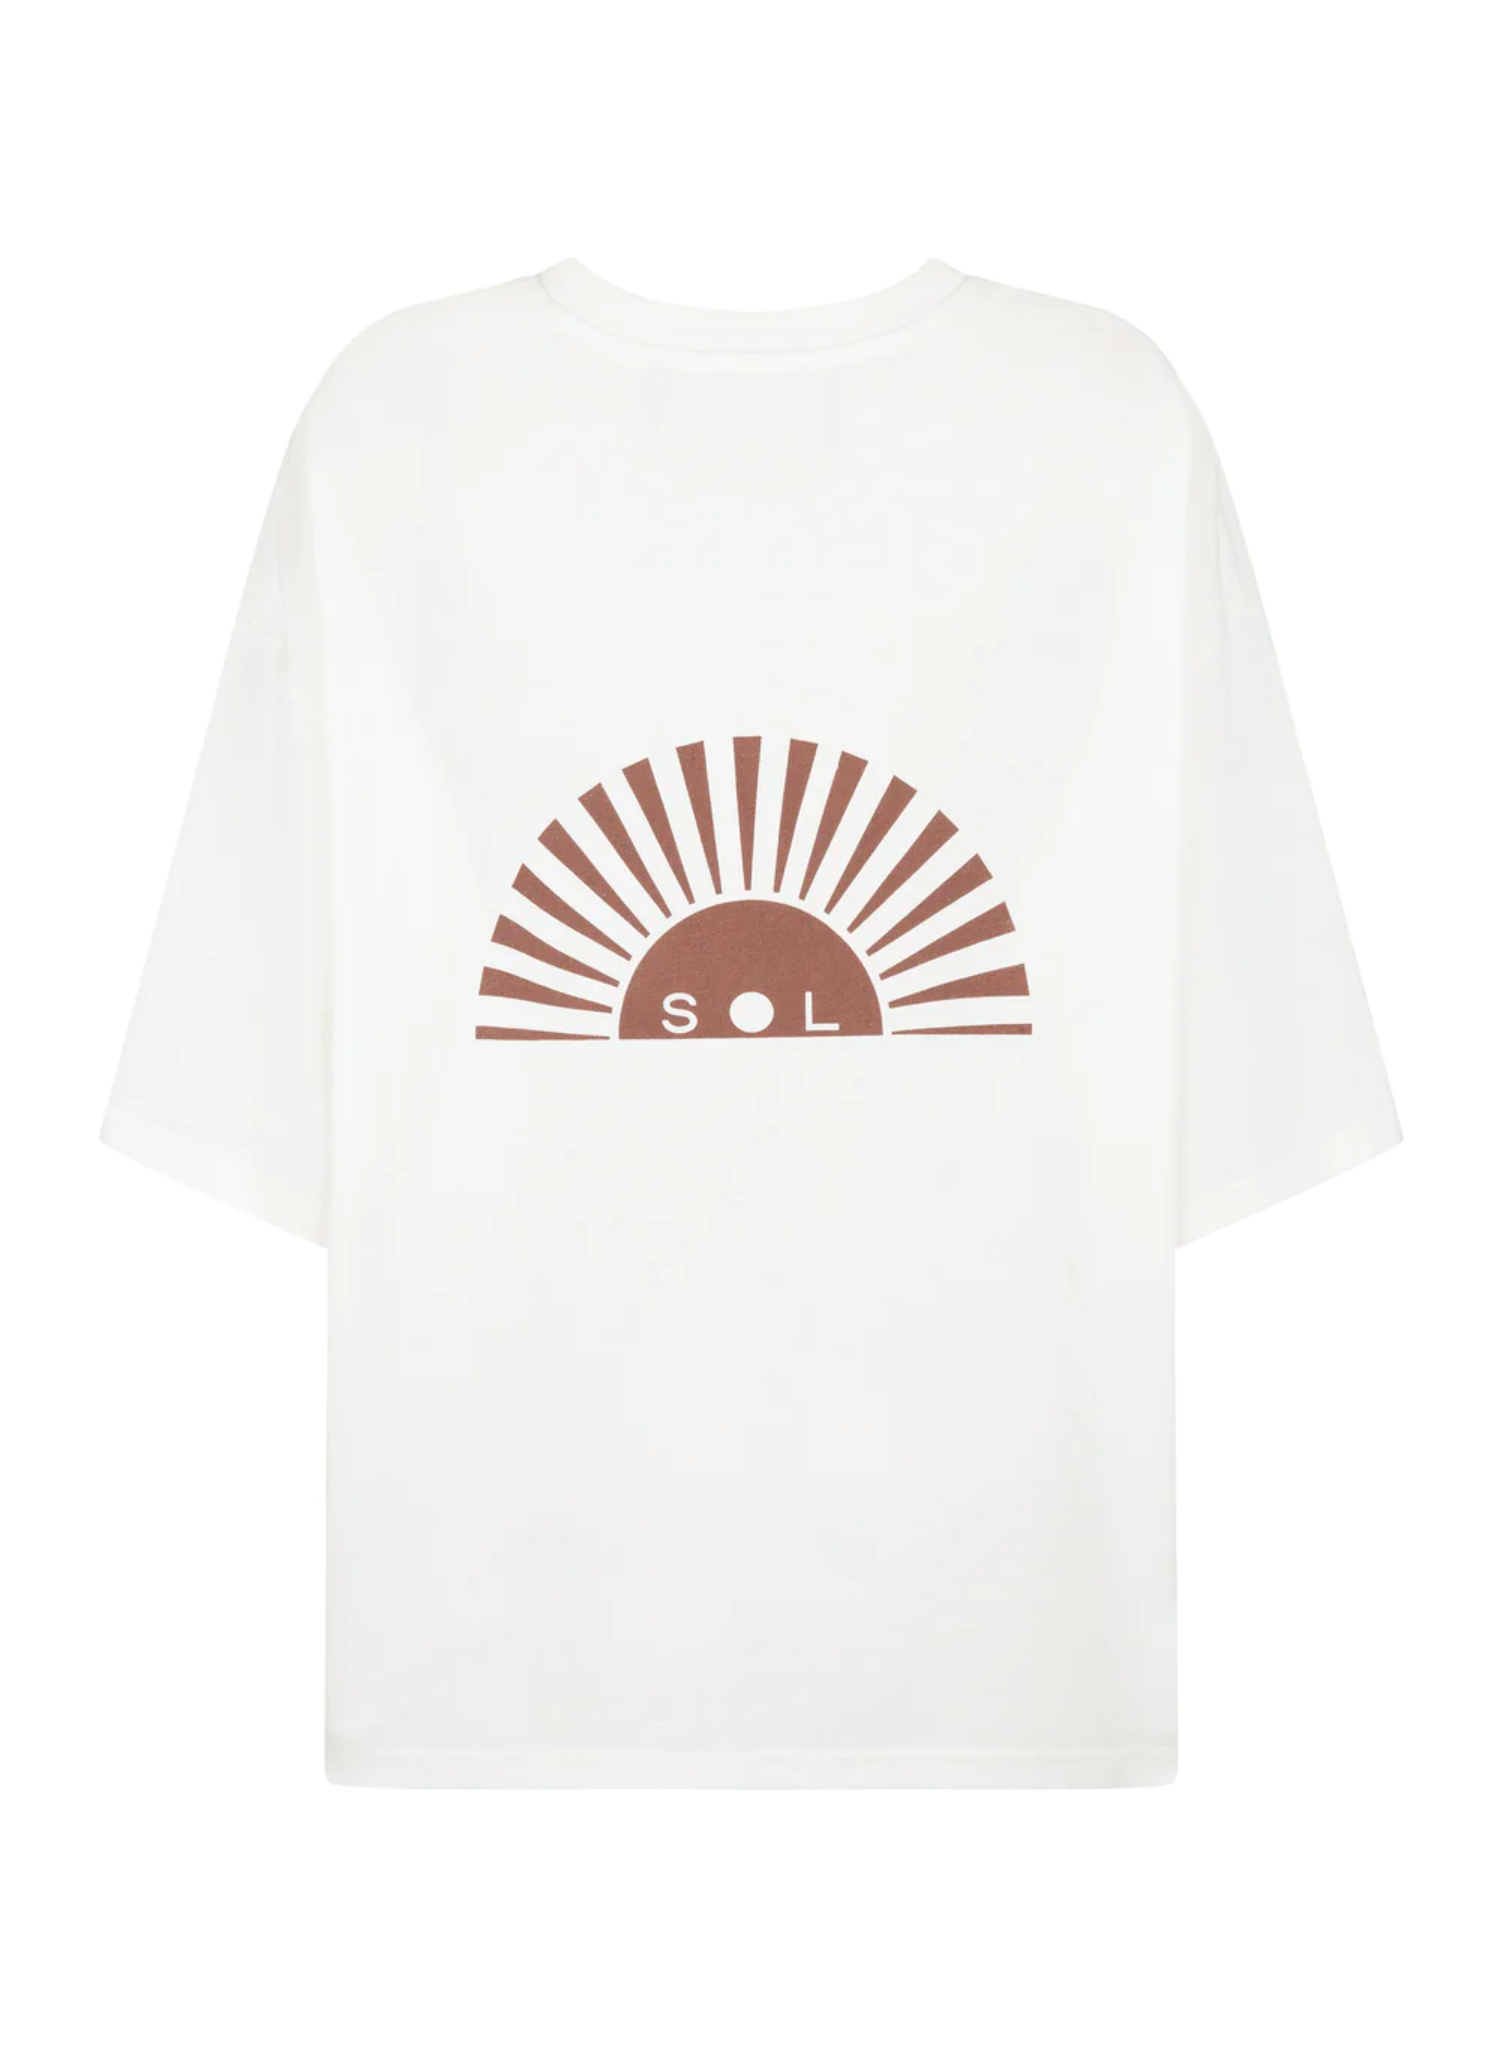 Sol T-Shirt in Cream